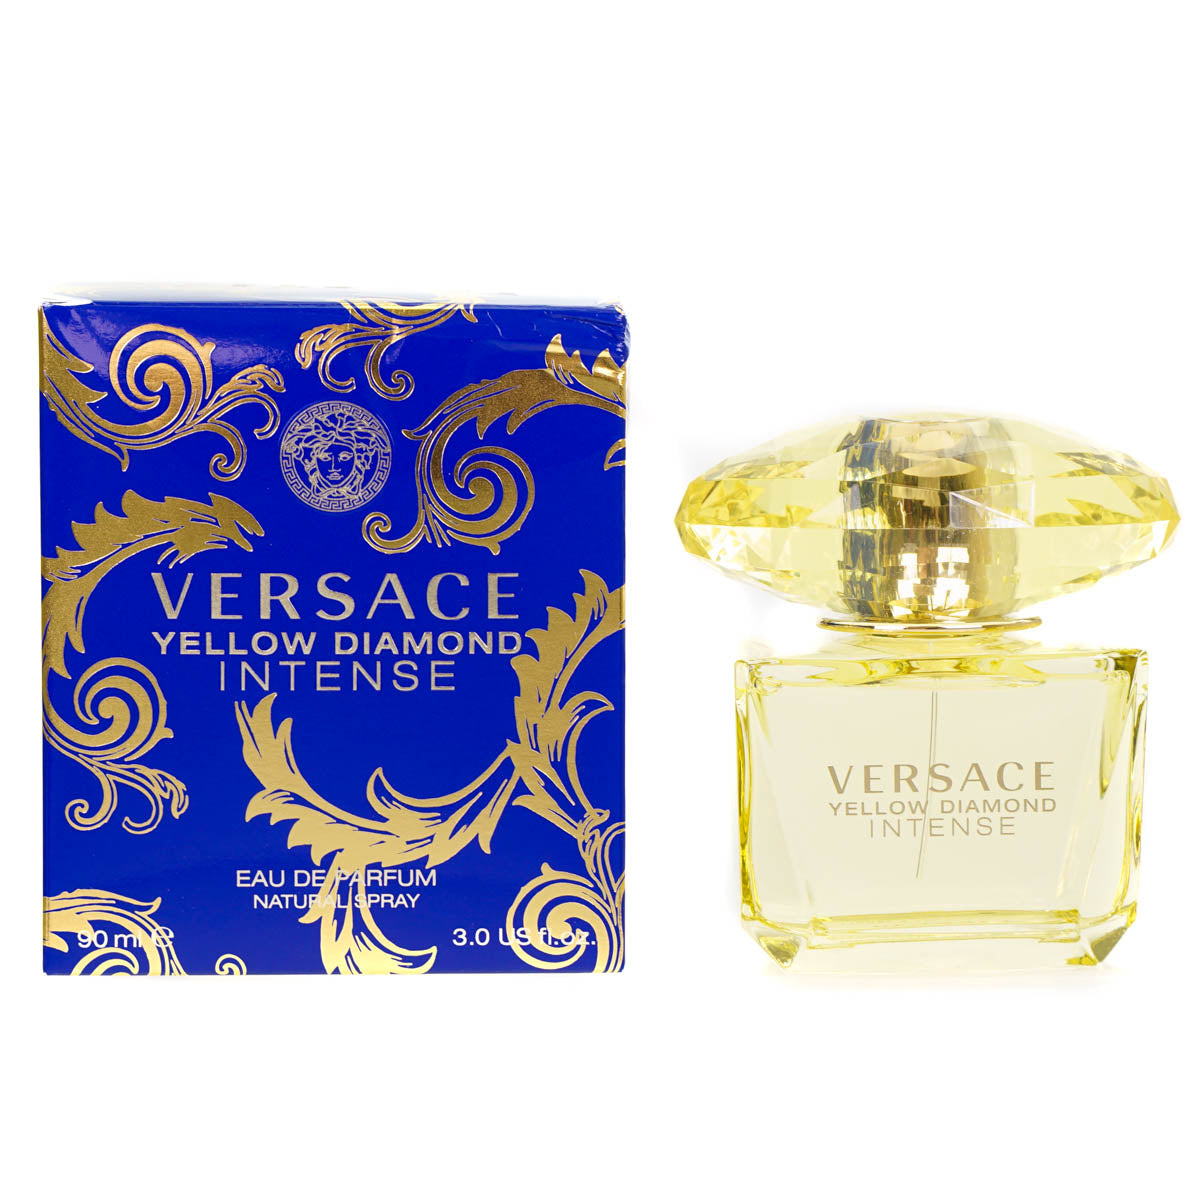 Versace Yellow Diamond Intense 90ml Eau De Parfum (Blemished Box)